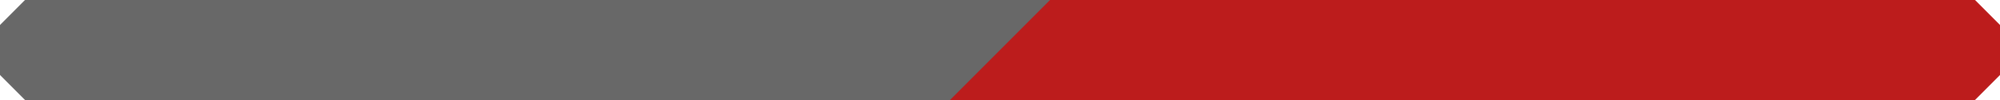 Red Tide Banner